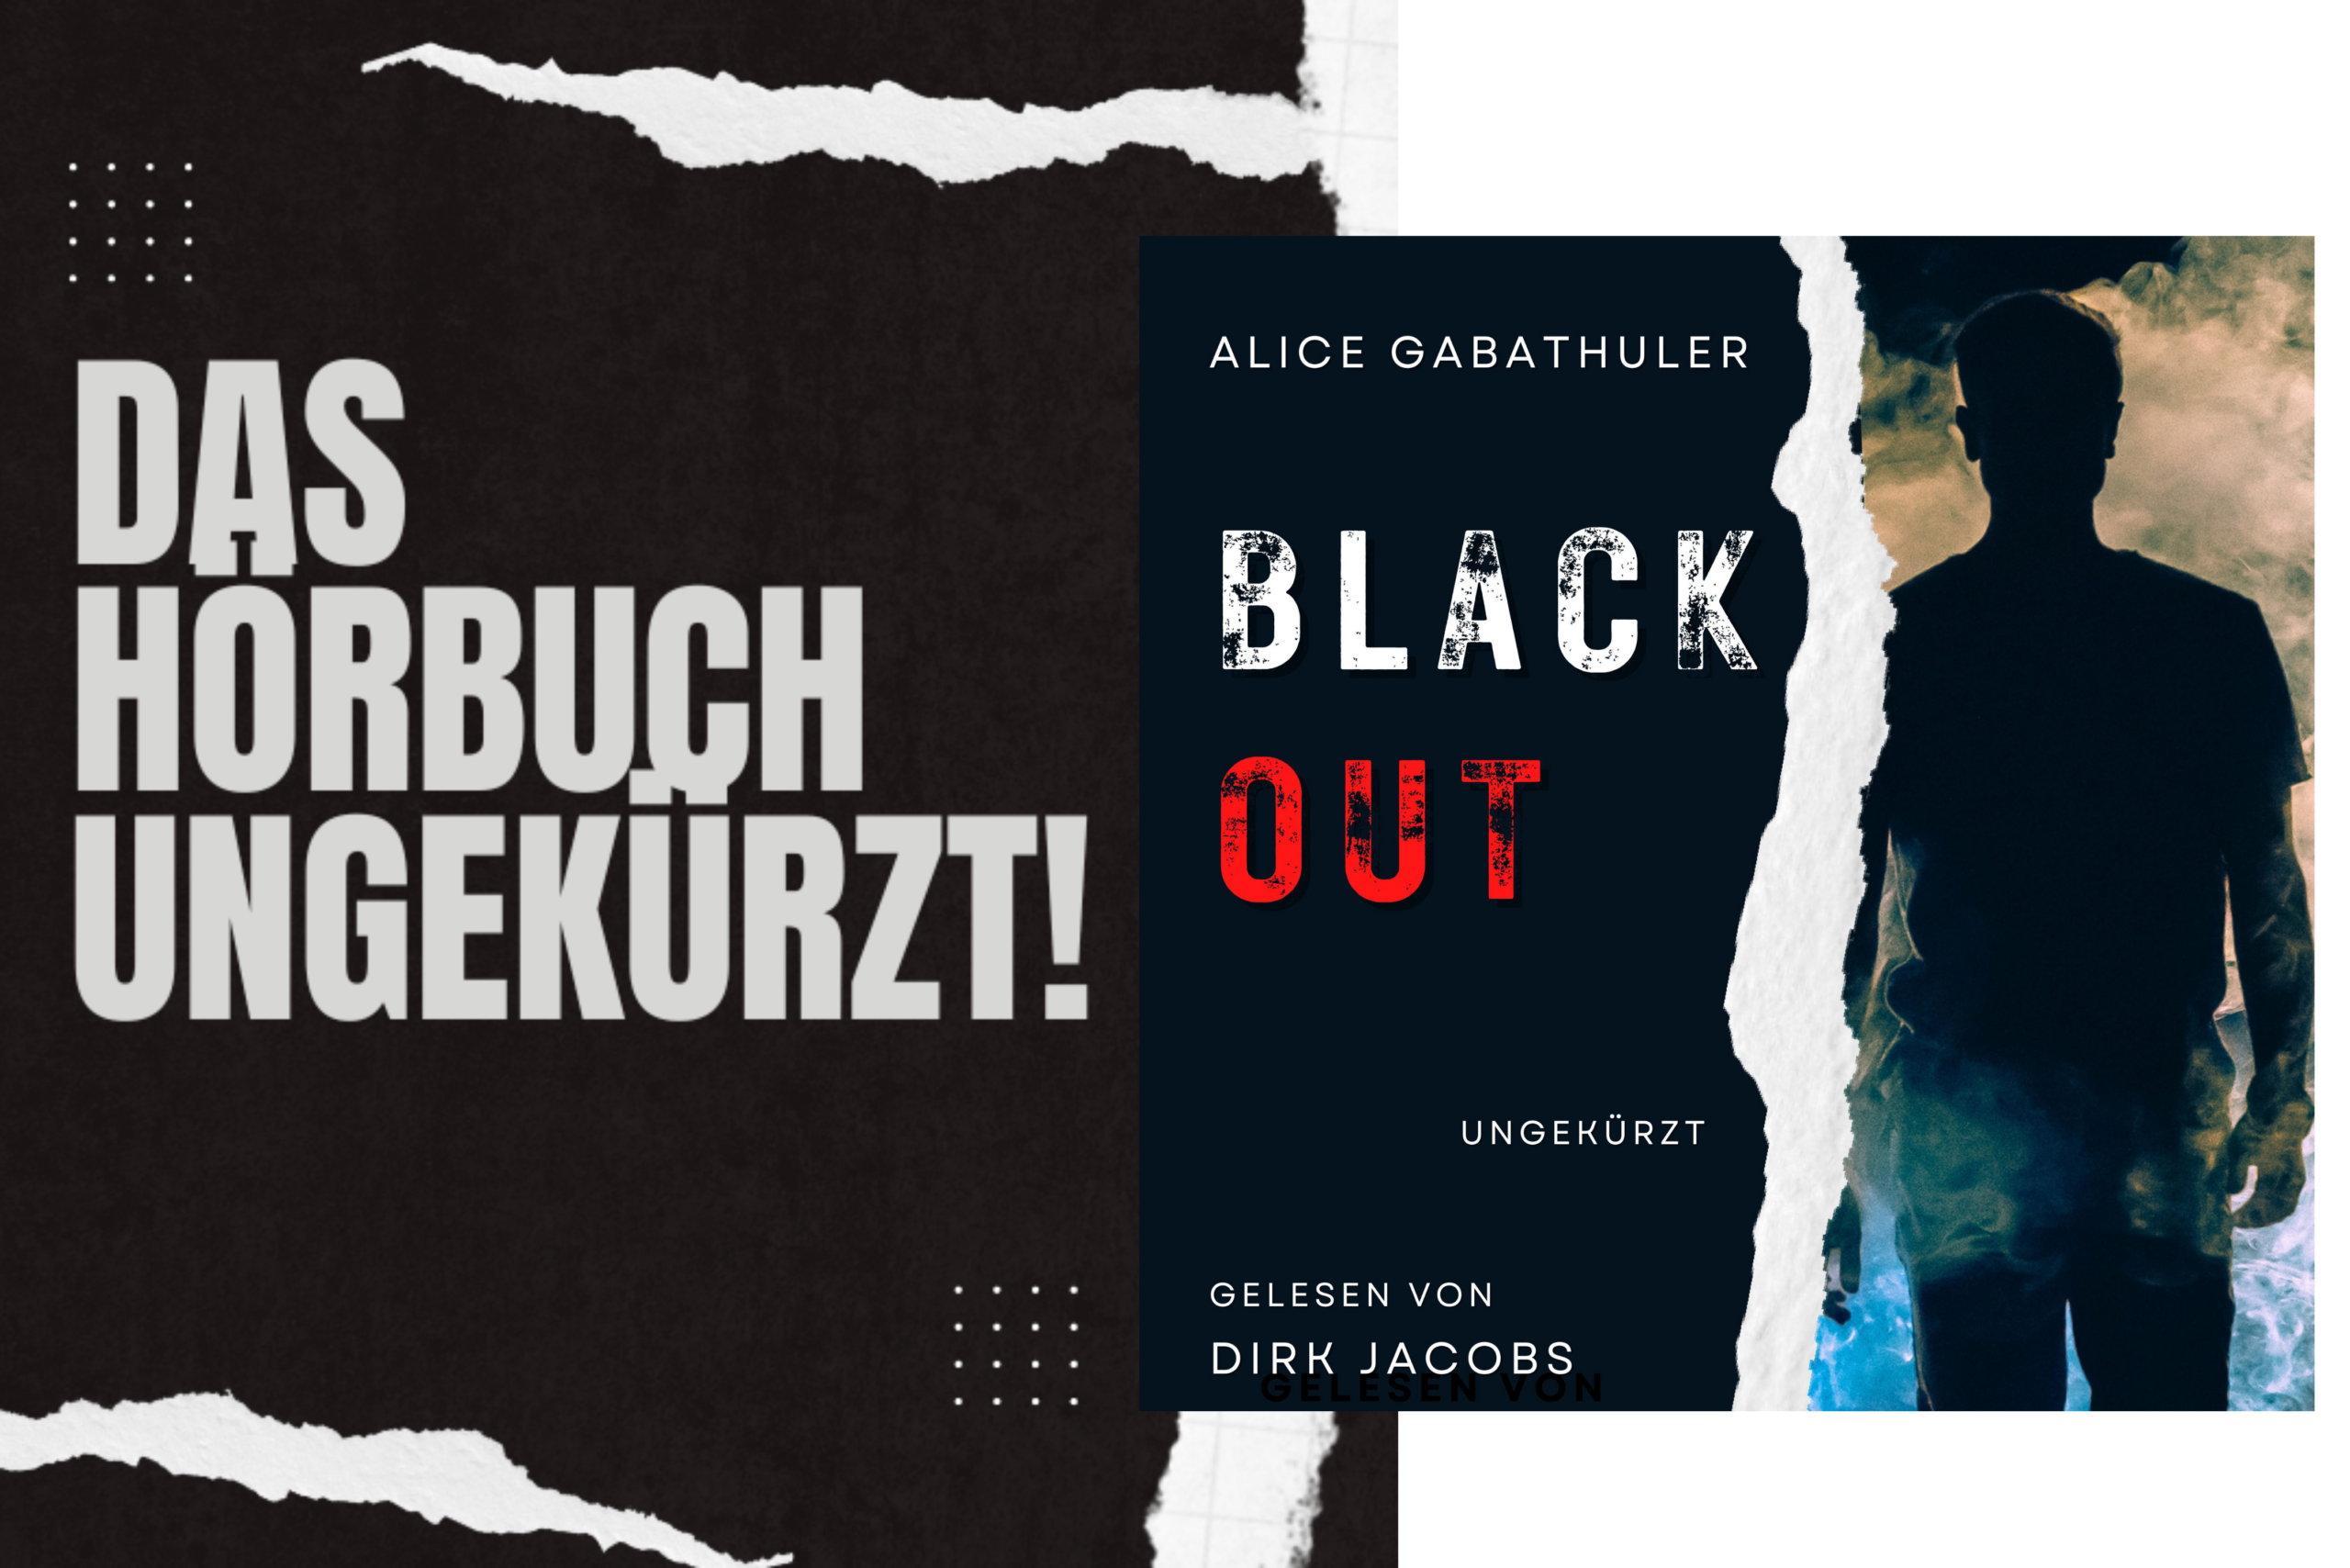 Hörbuch “Blackout” von Alice Gabathuler